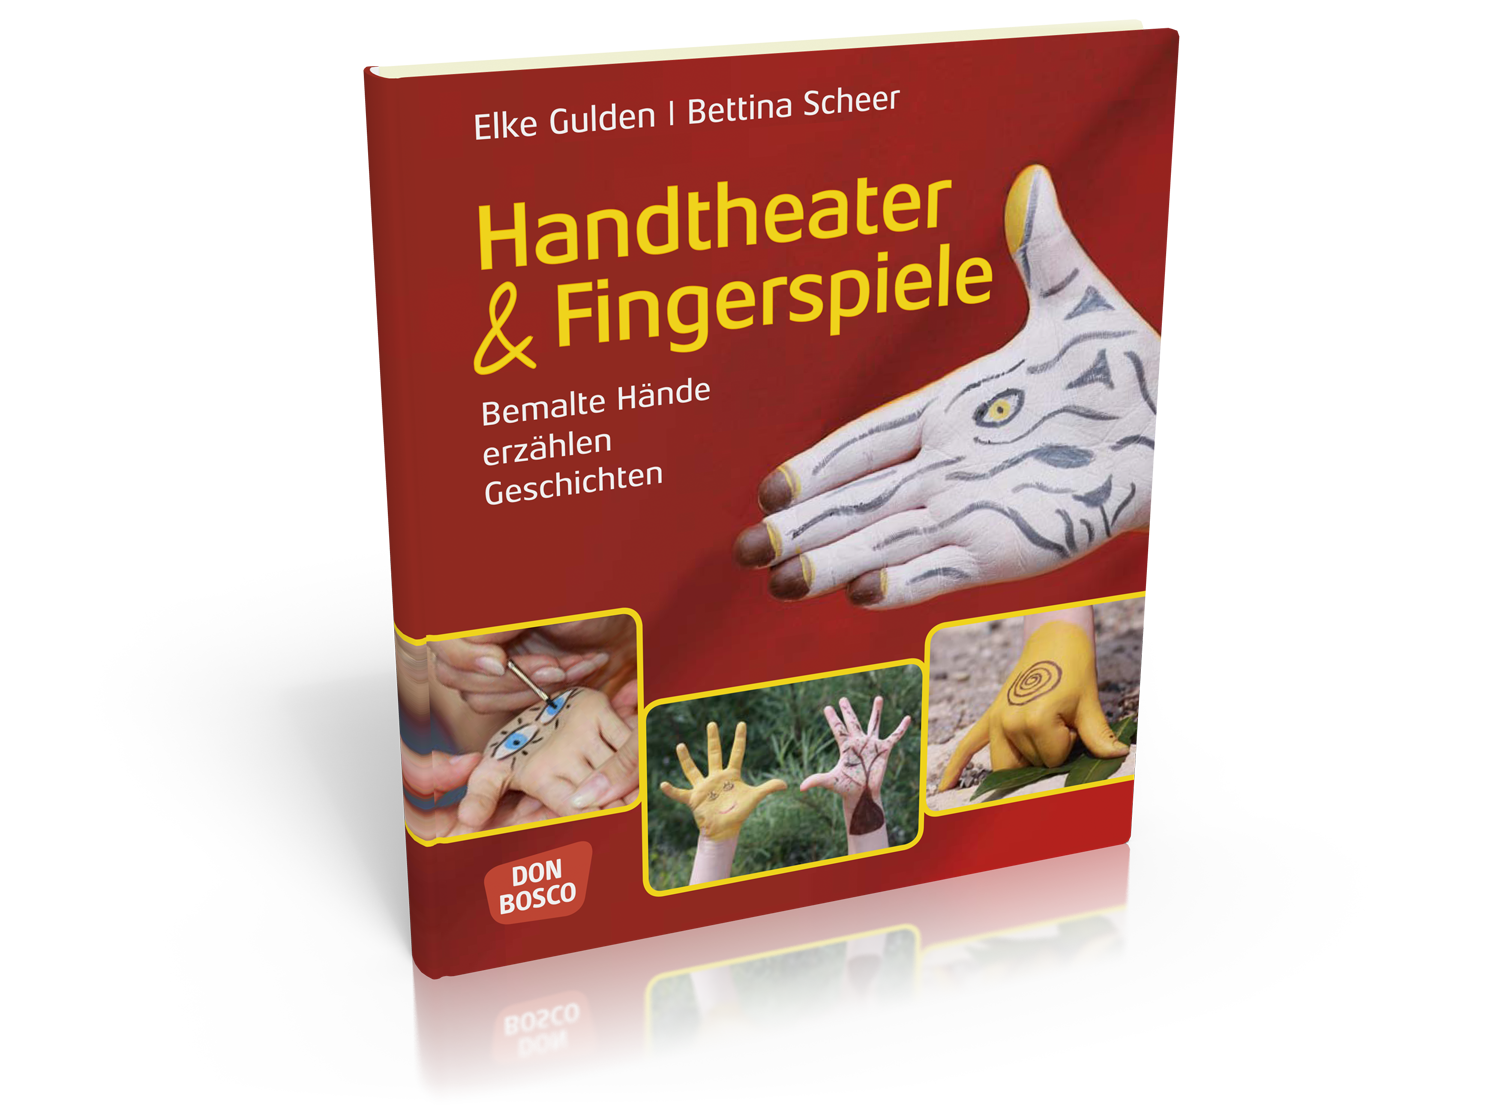 Handtheater & Fingerspiele